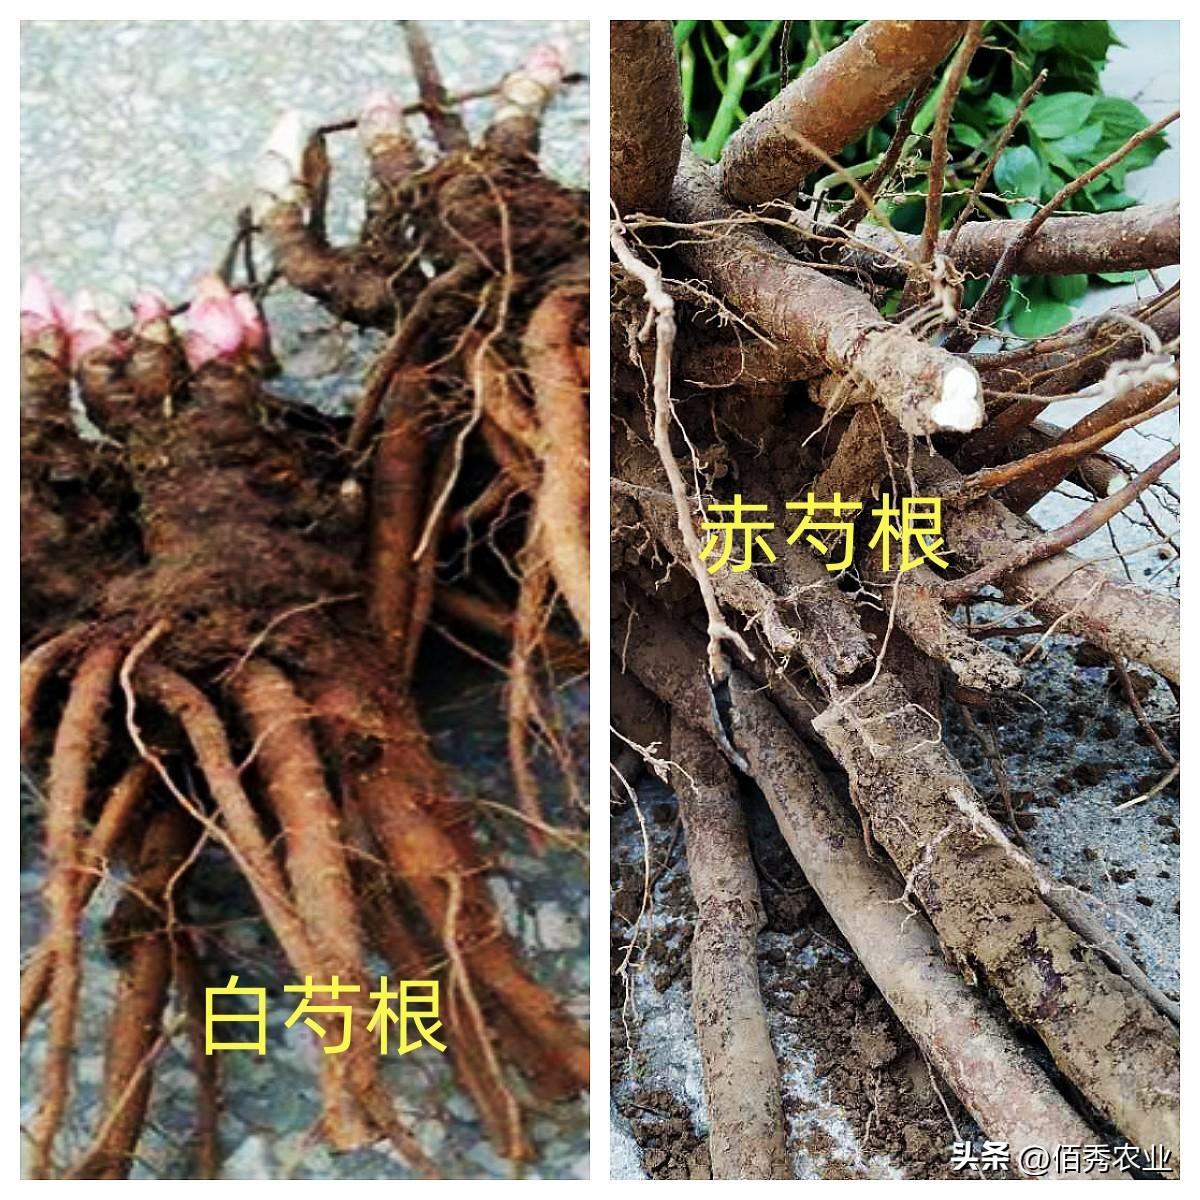 白芍 Bai shao / Peony Root / Radix Paeoniae Alba / Paeoniae Alba Rx ...